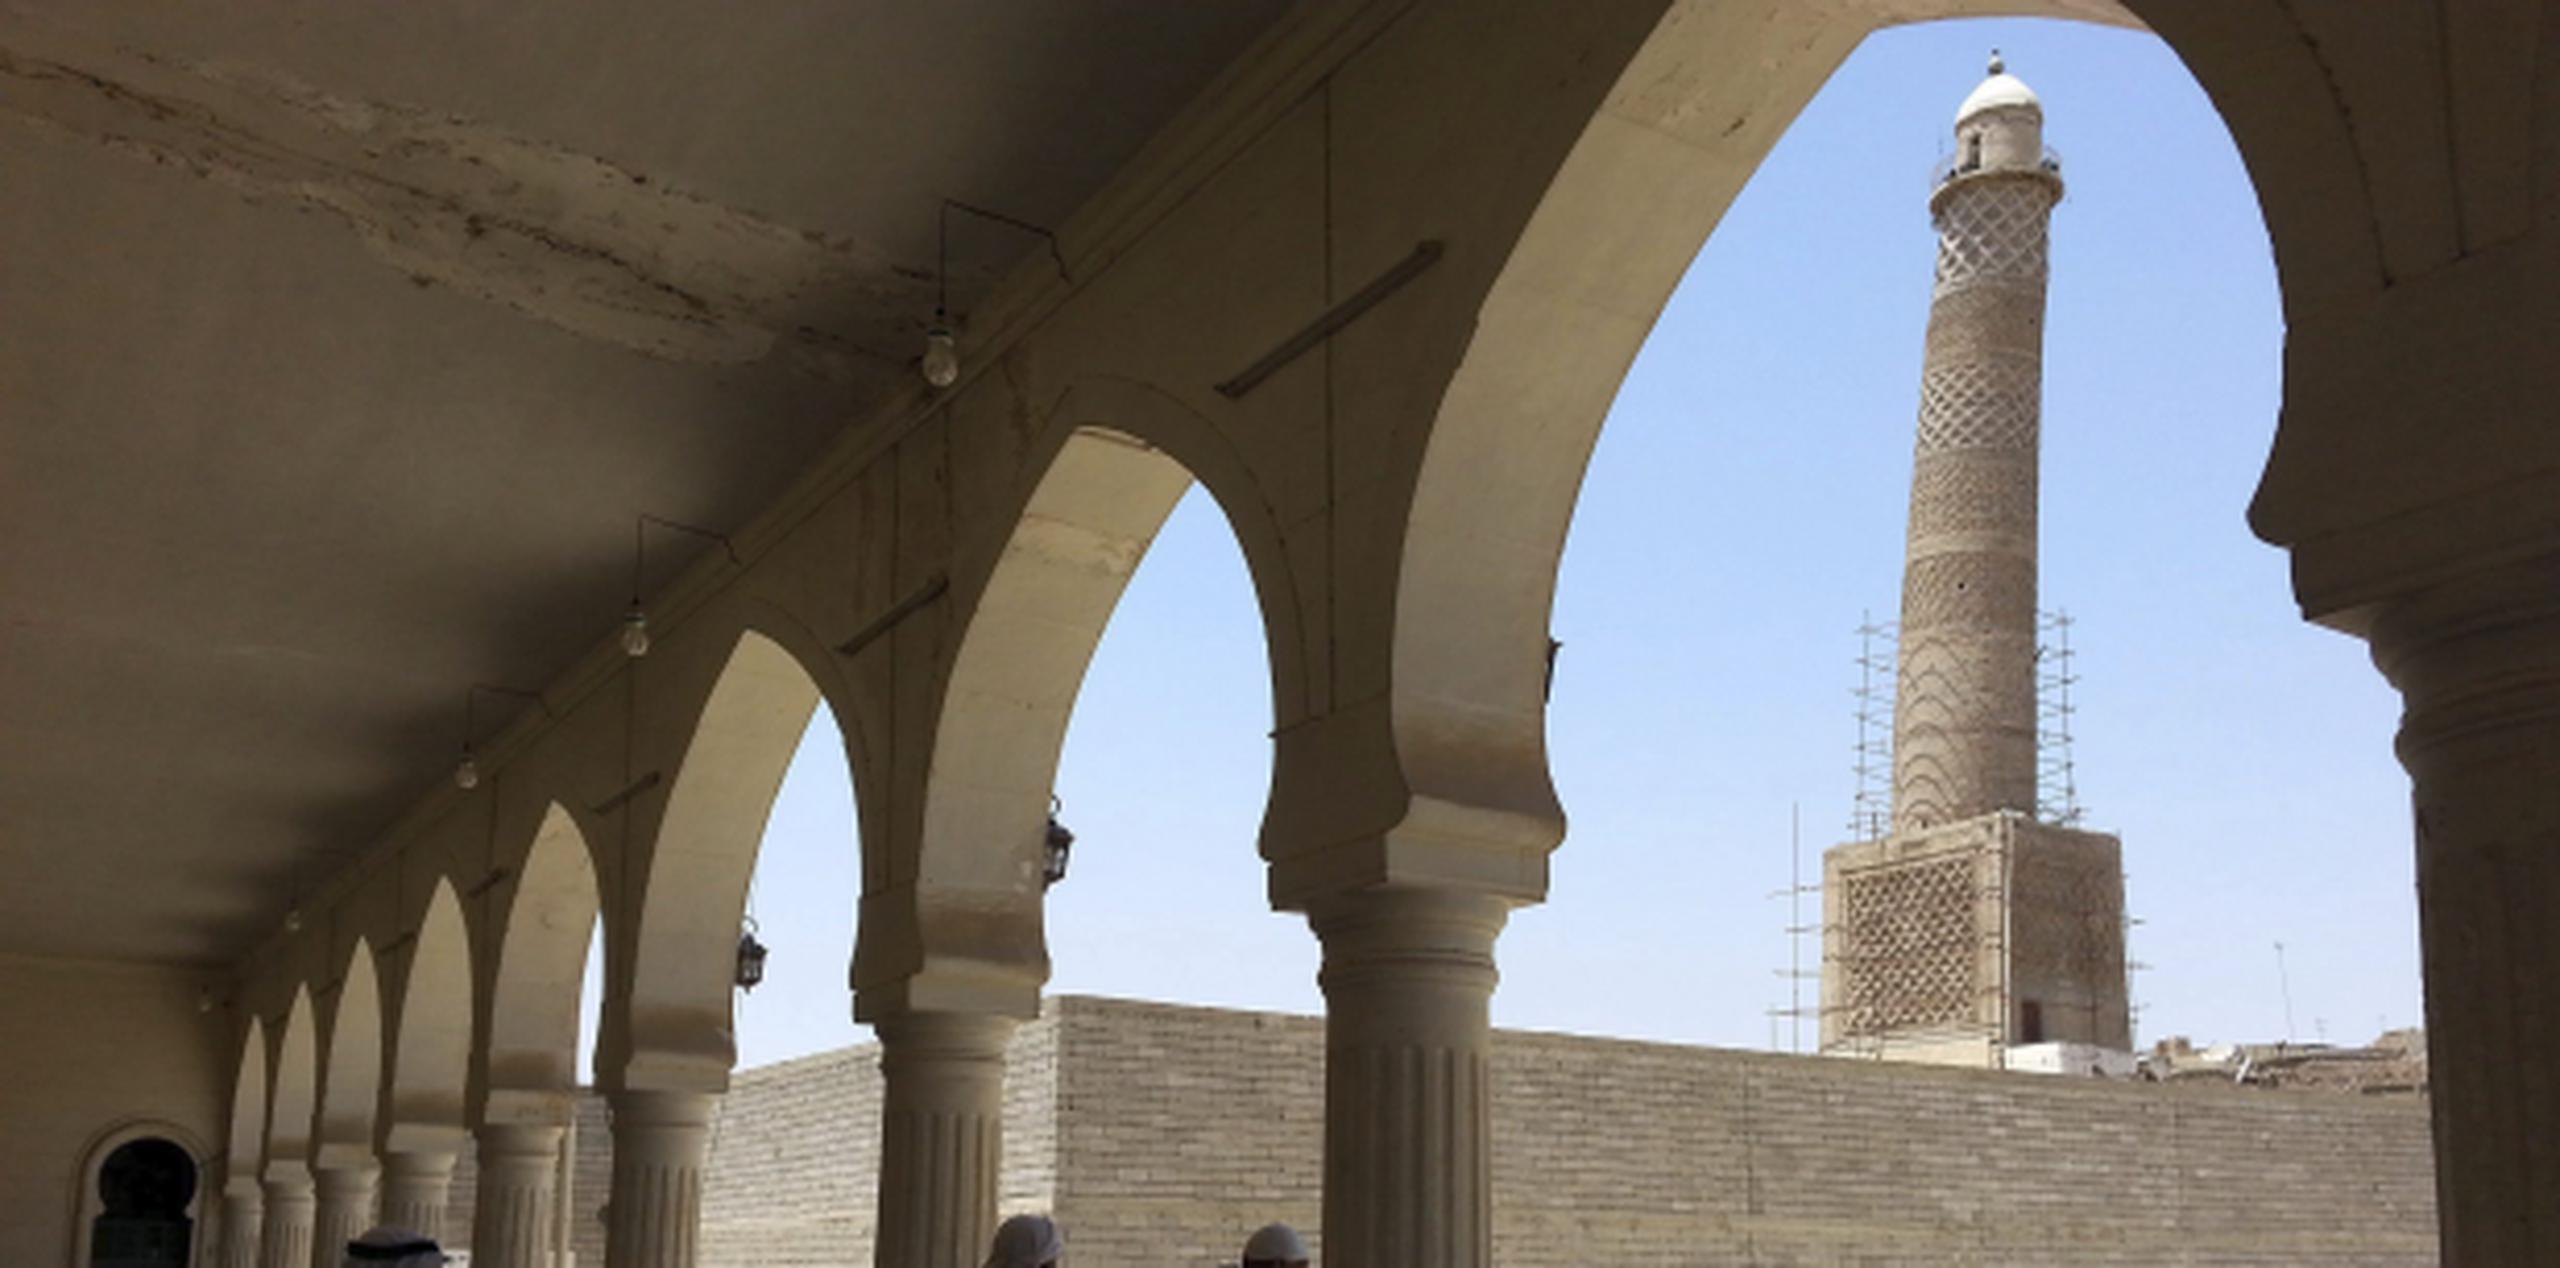 La mezquita de Al Nuri, con su famoso minarete inclinado y más de 800 años de antigüedad, era uno de los símbolos más conocidos de Mosul. (Archivo)